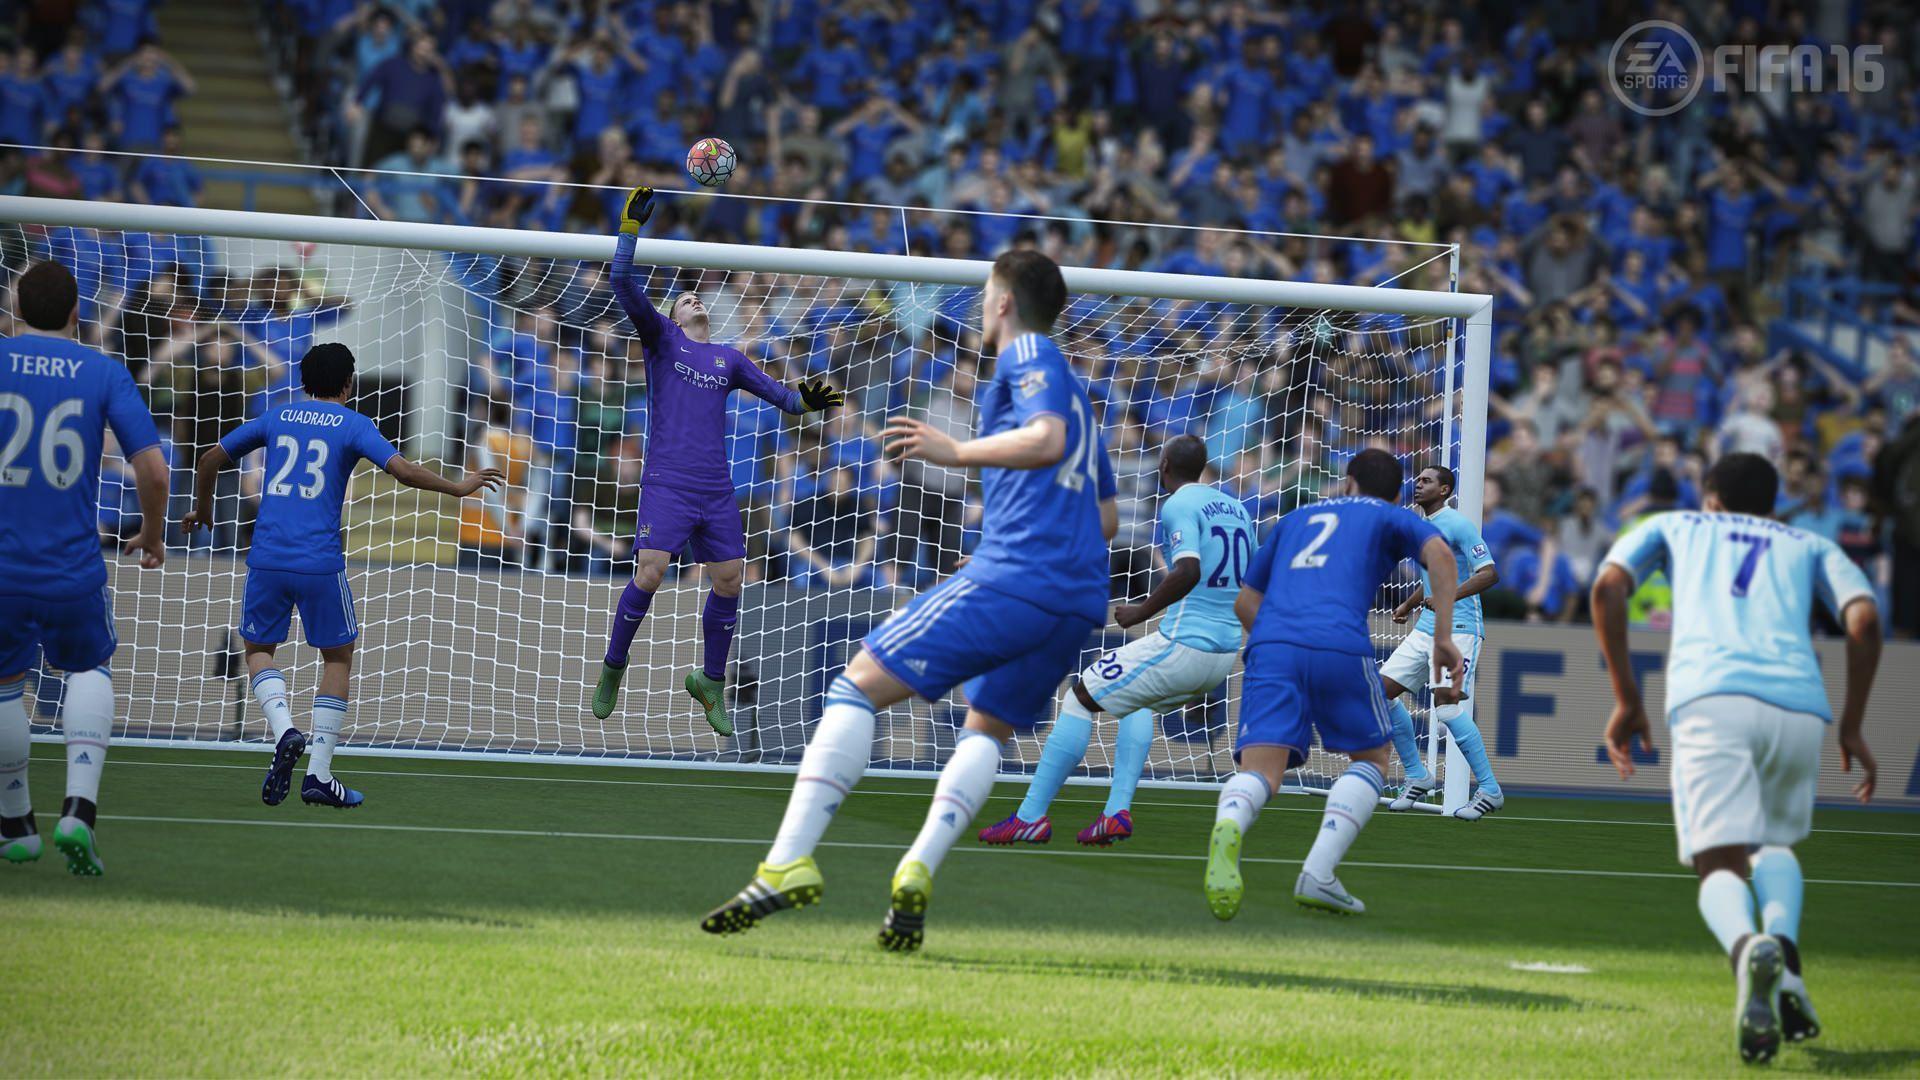 FIFA 16 Screenshots – gamescom – FIFPlay